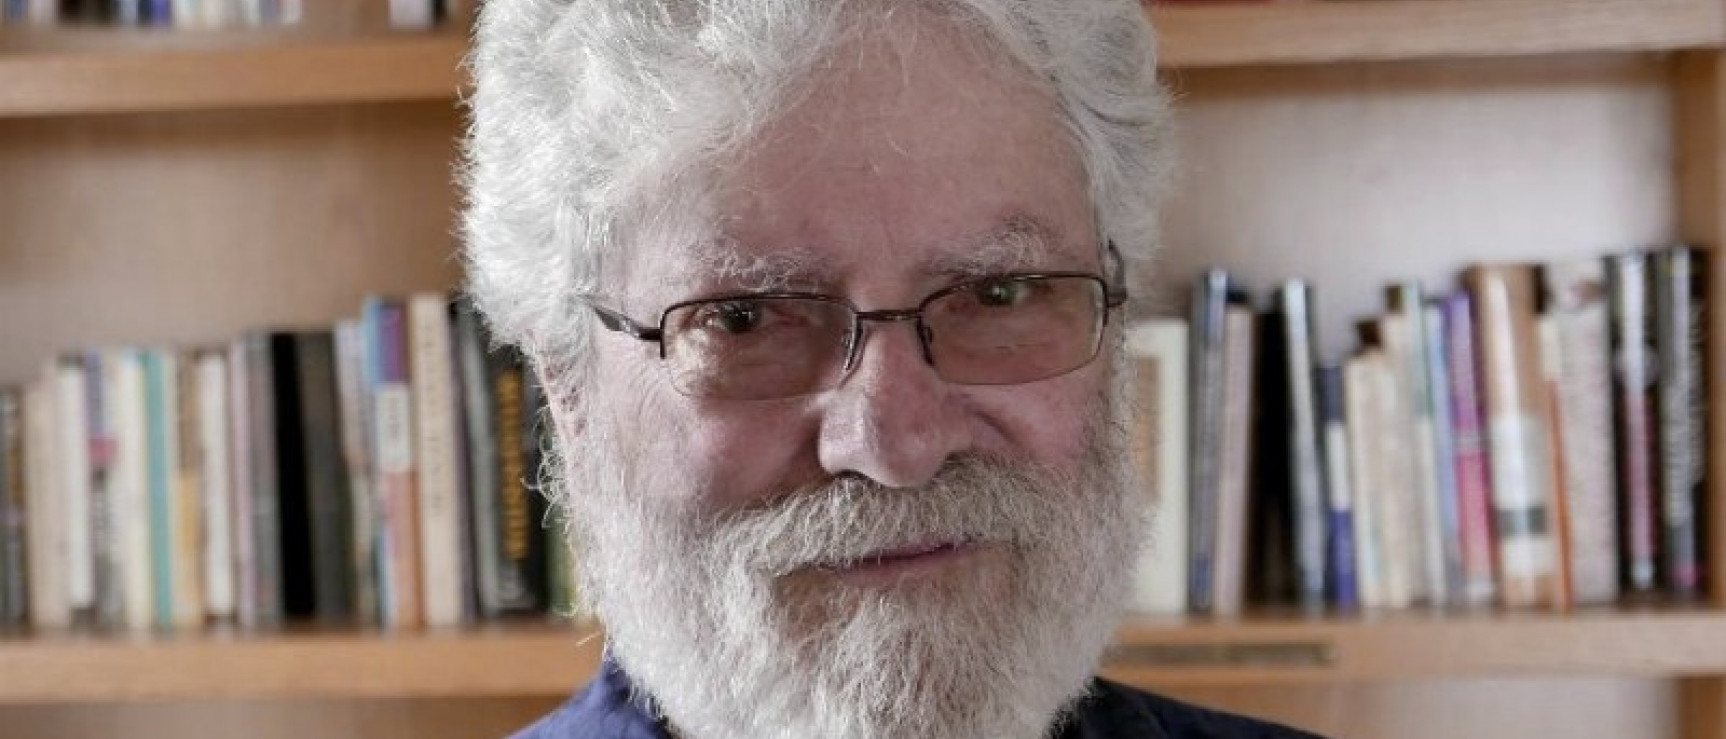 El profesor e investigador Enrique R. Lamadrid, Premio Enrique Anderson Imbert 2019.